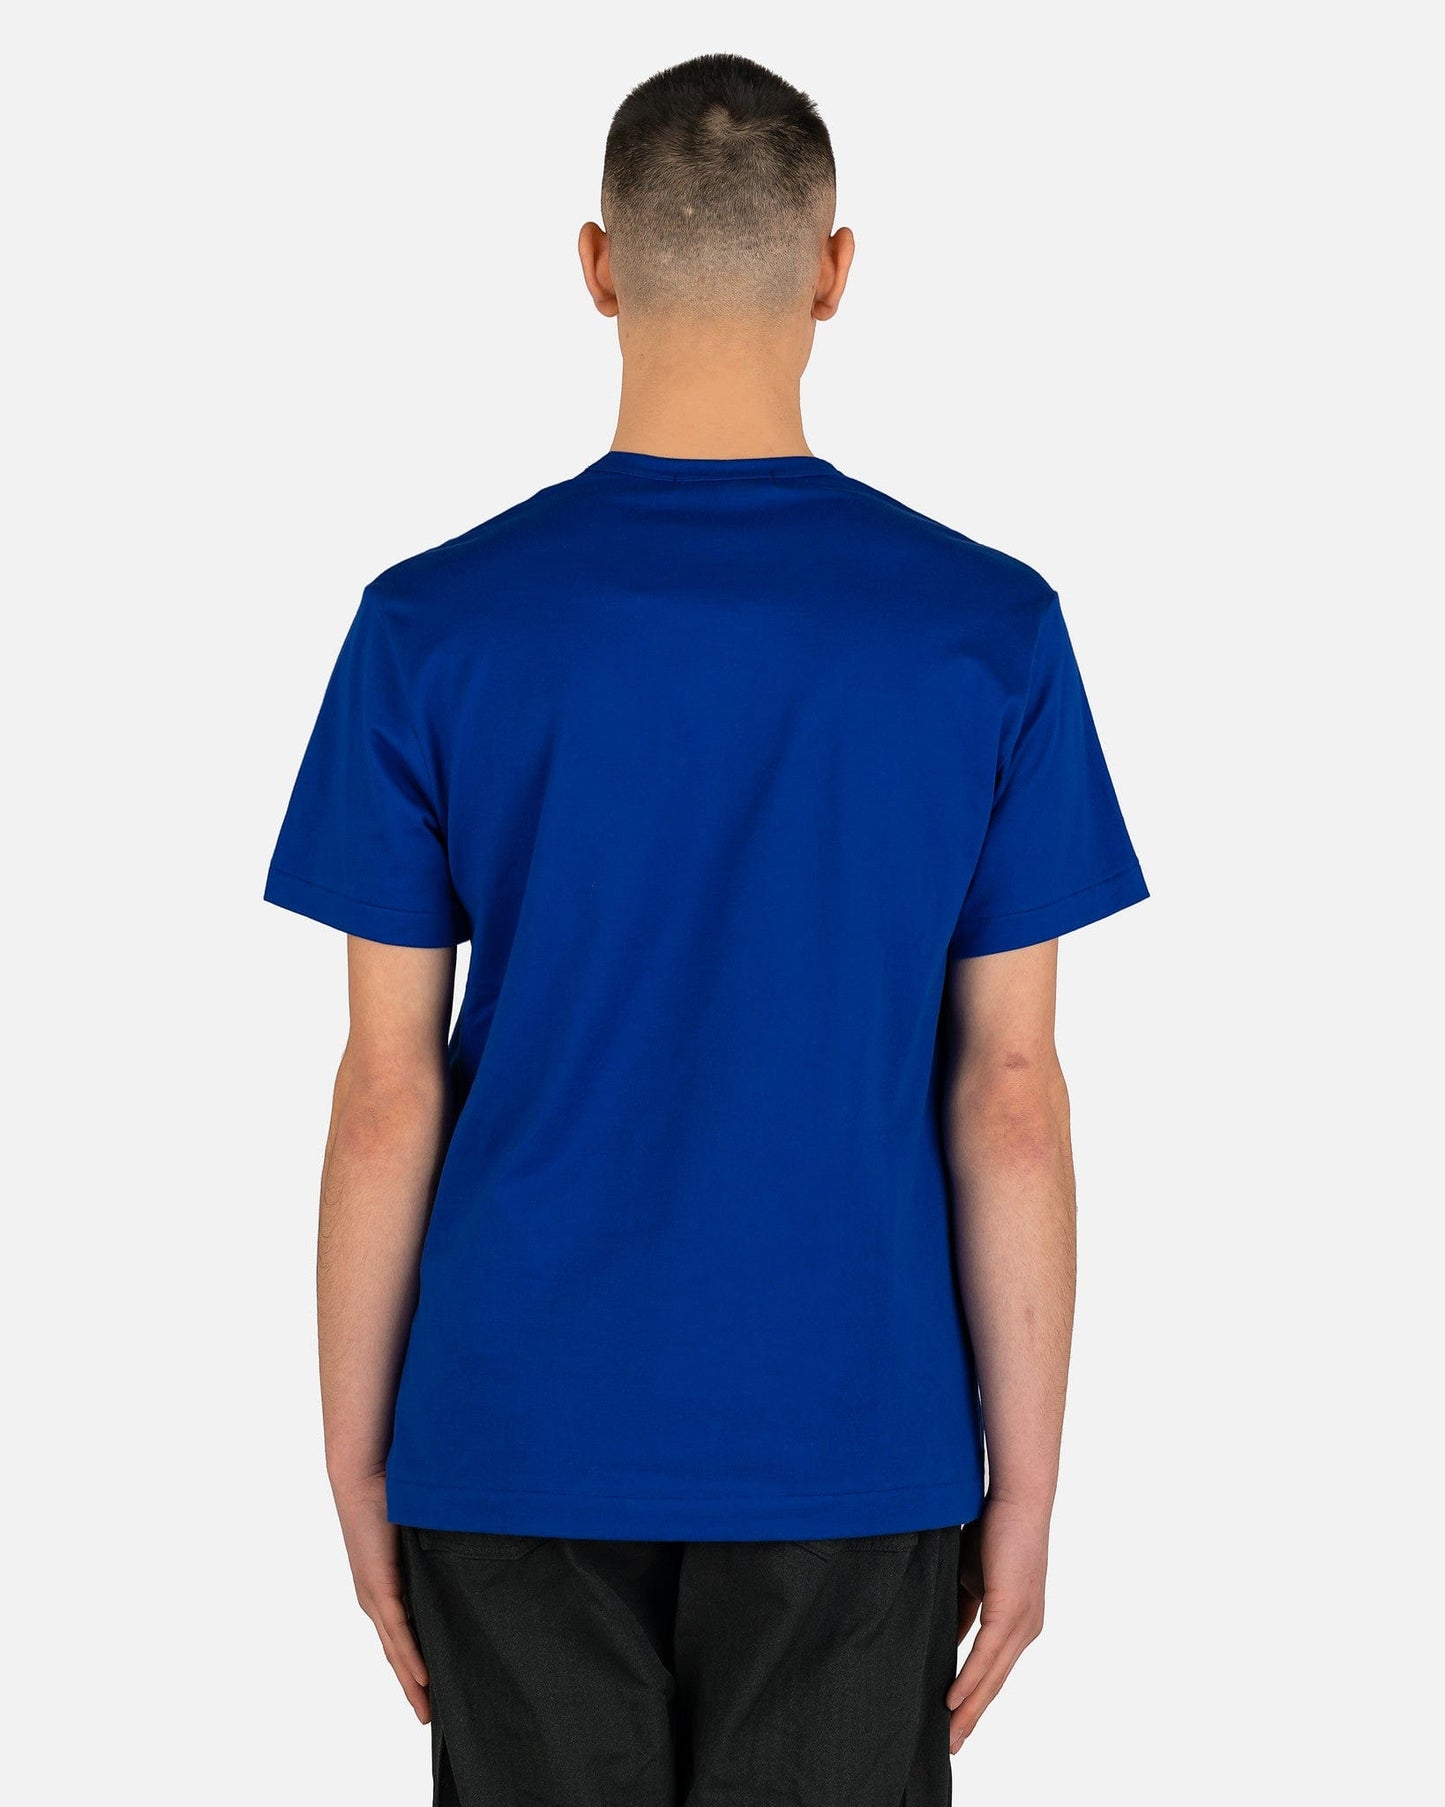 Comme des Garcons Homme Deux Men's T-Shirts Doodle Print T-Shirt in Royal Blue